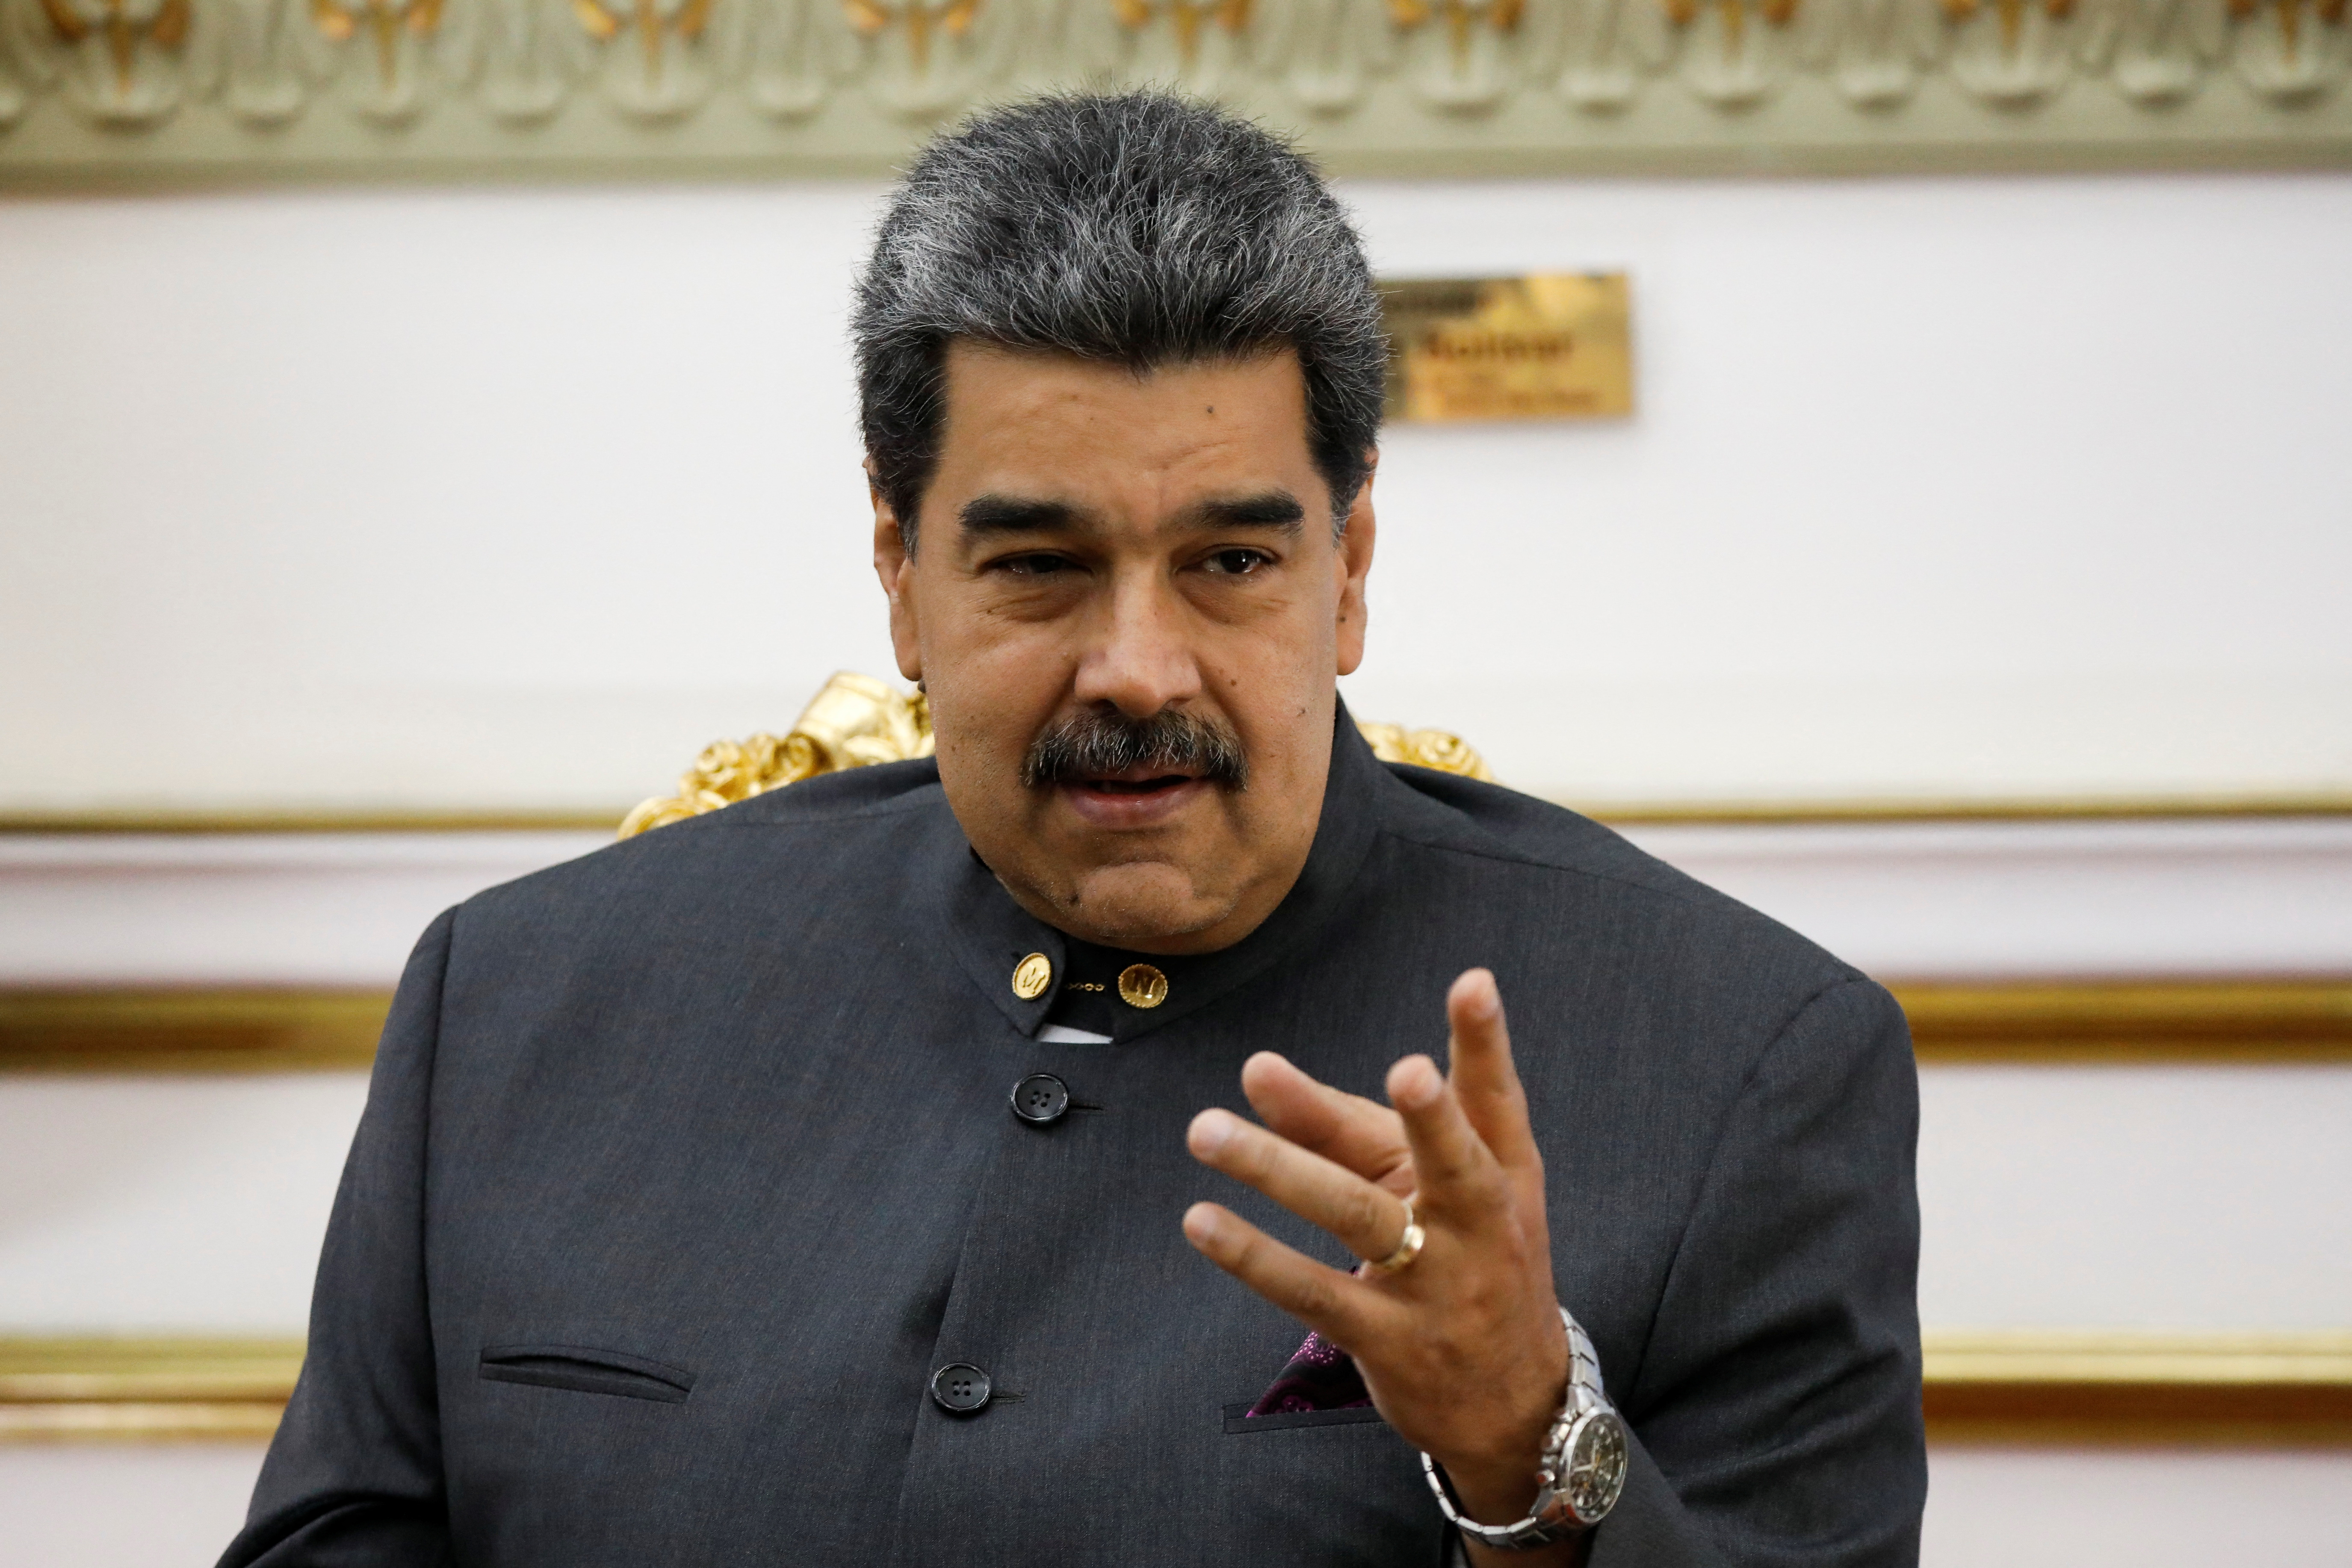 El dictador de Venezuela, Nicolás Maduro